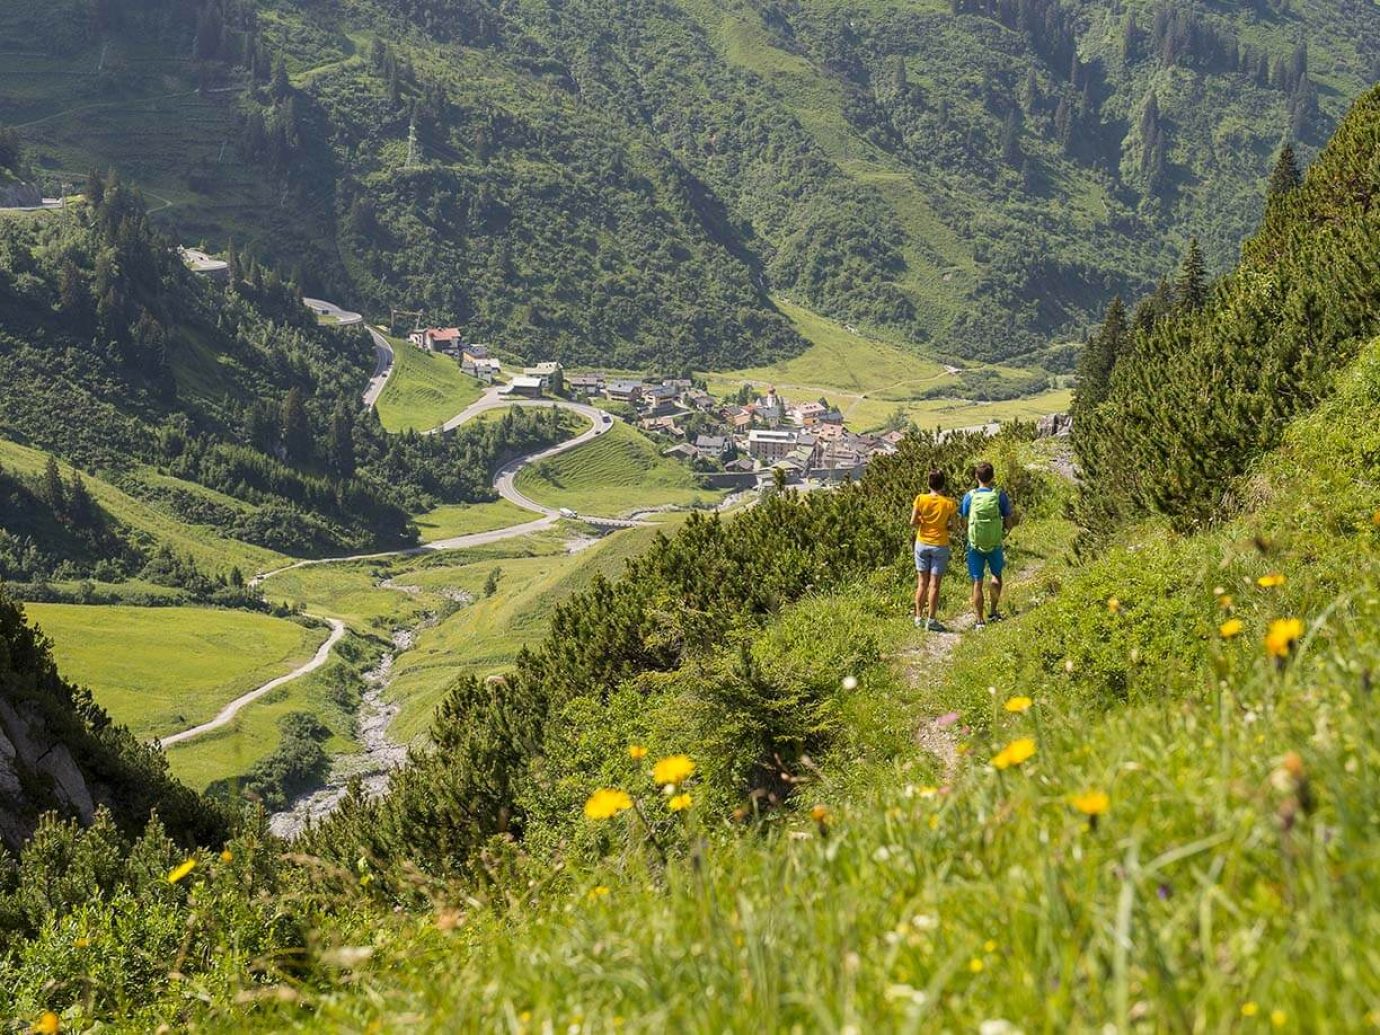 2 Personen mitten in den Bergen, rundum grüne Gegend mit Wald und Ortschaft Stuben am Arlberg im Hintergrund zu sehen.